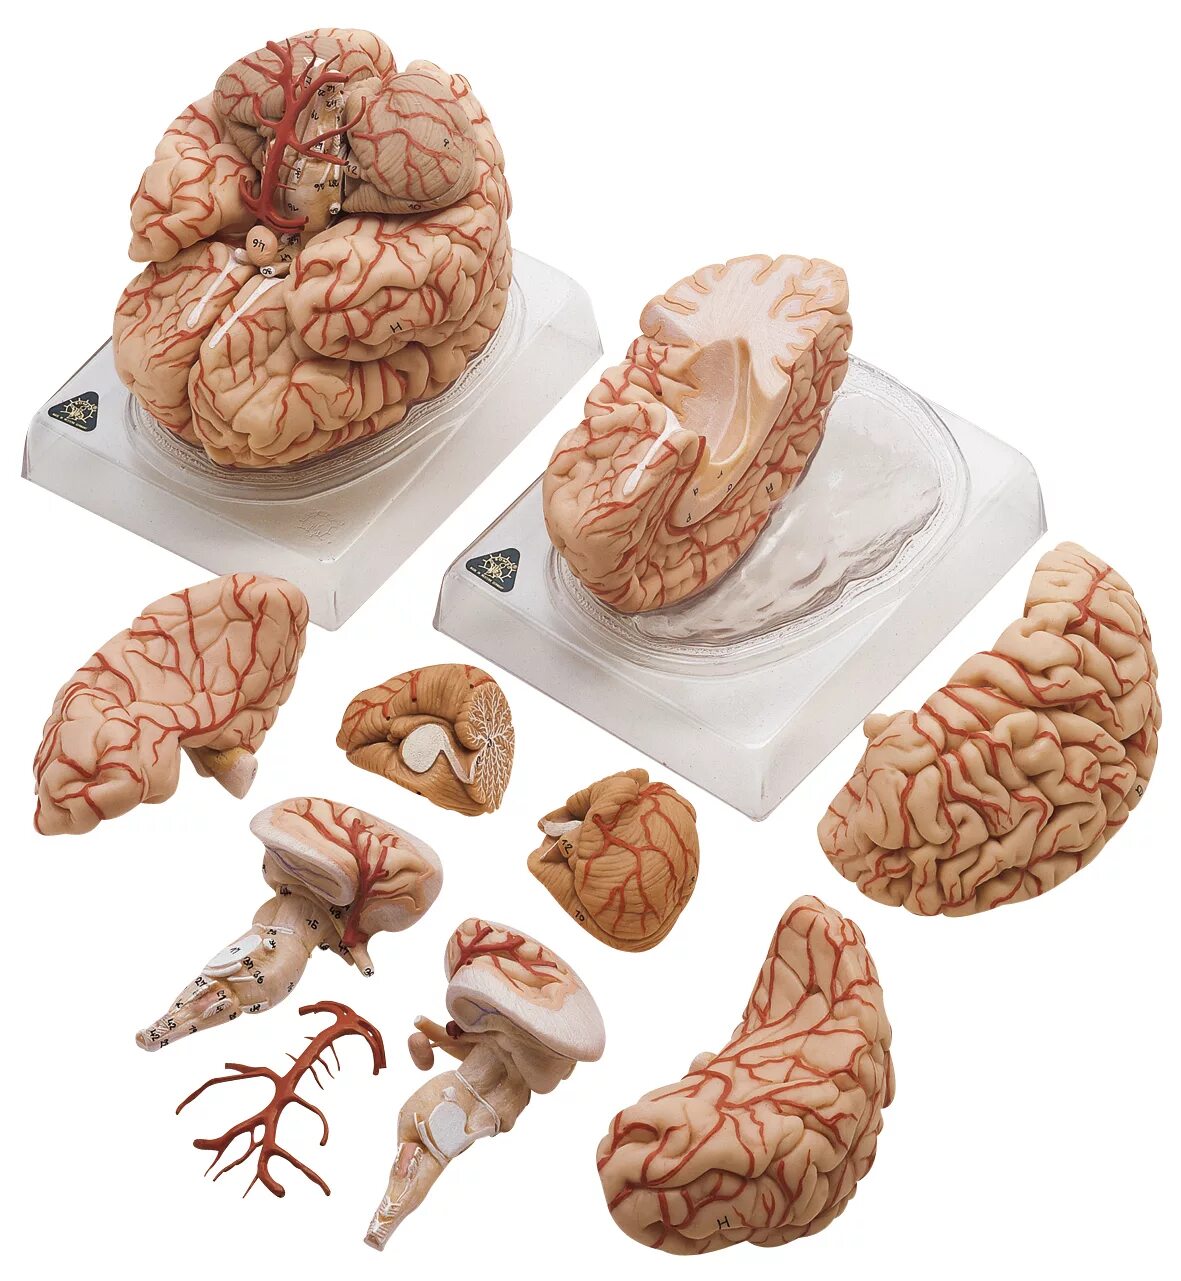 Brain 106. Анатомическая модель головного мозга. Муляж мозга. Человеческий мозг в разрезе.